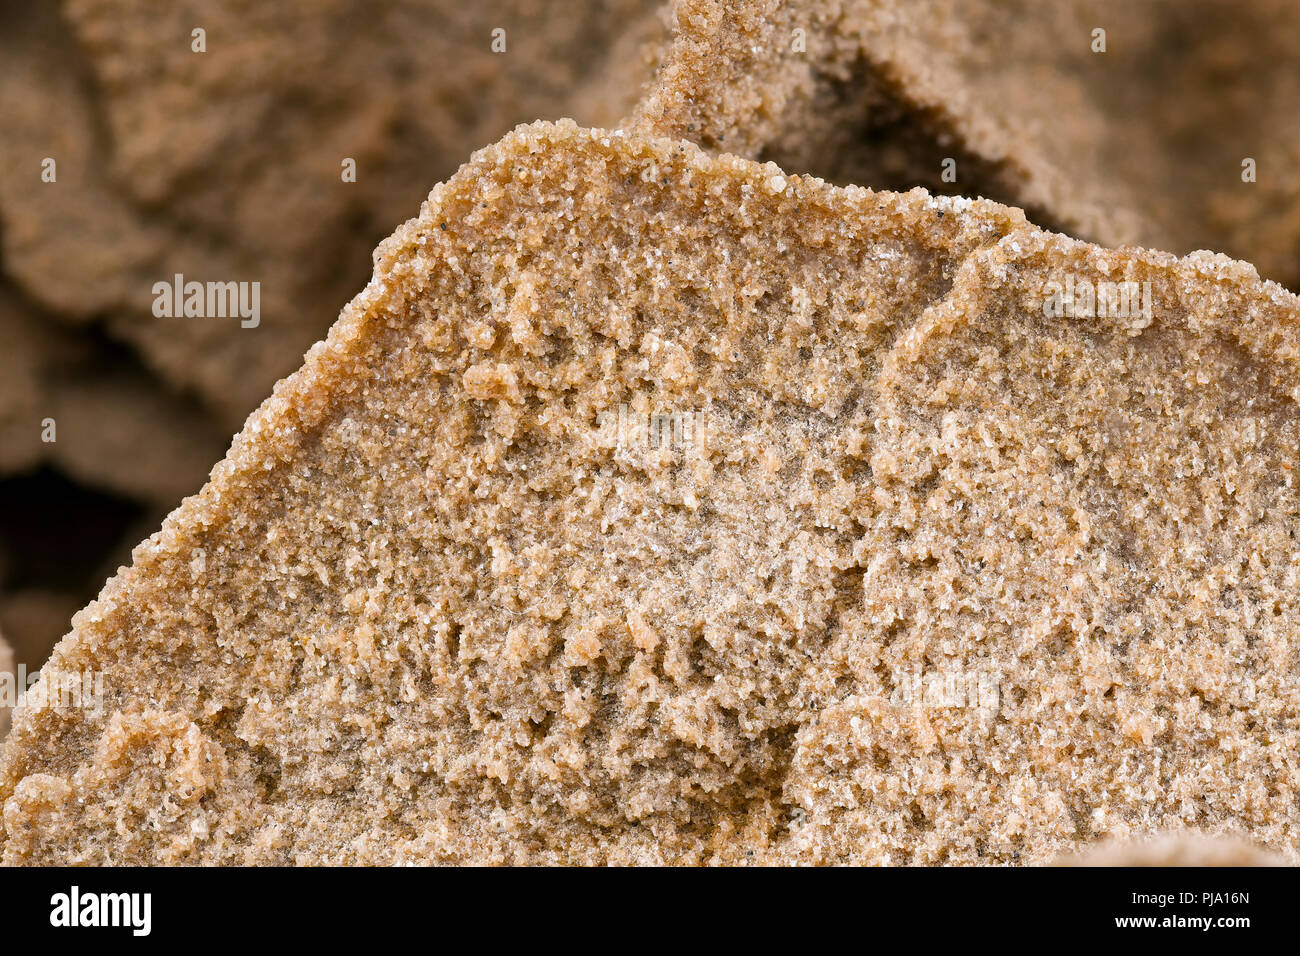 Rosafarbener Sand stieg aus nächster Nähe auf, Details der Sandkörner und die einzigartige Struktur einer Wüstensandrose. Stockfoto